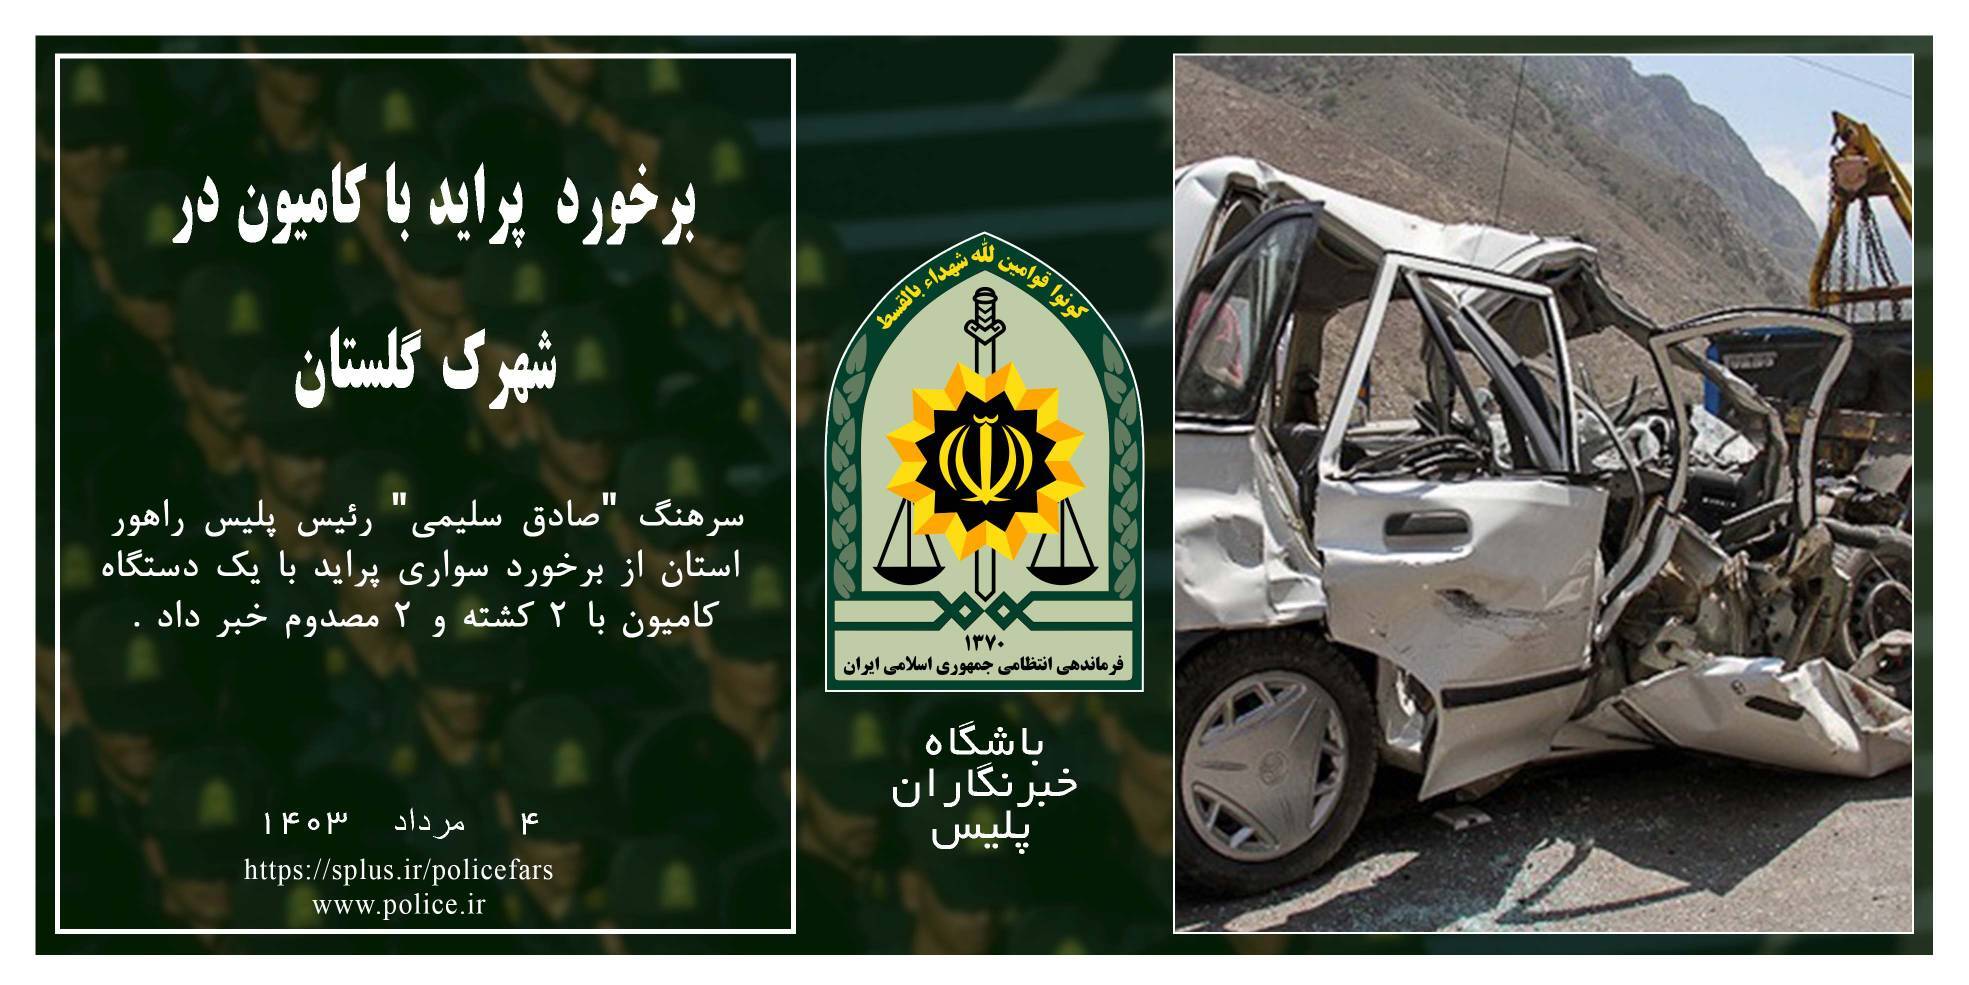 دو کشته در برخورد پراید با کامیون در شیراز